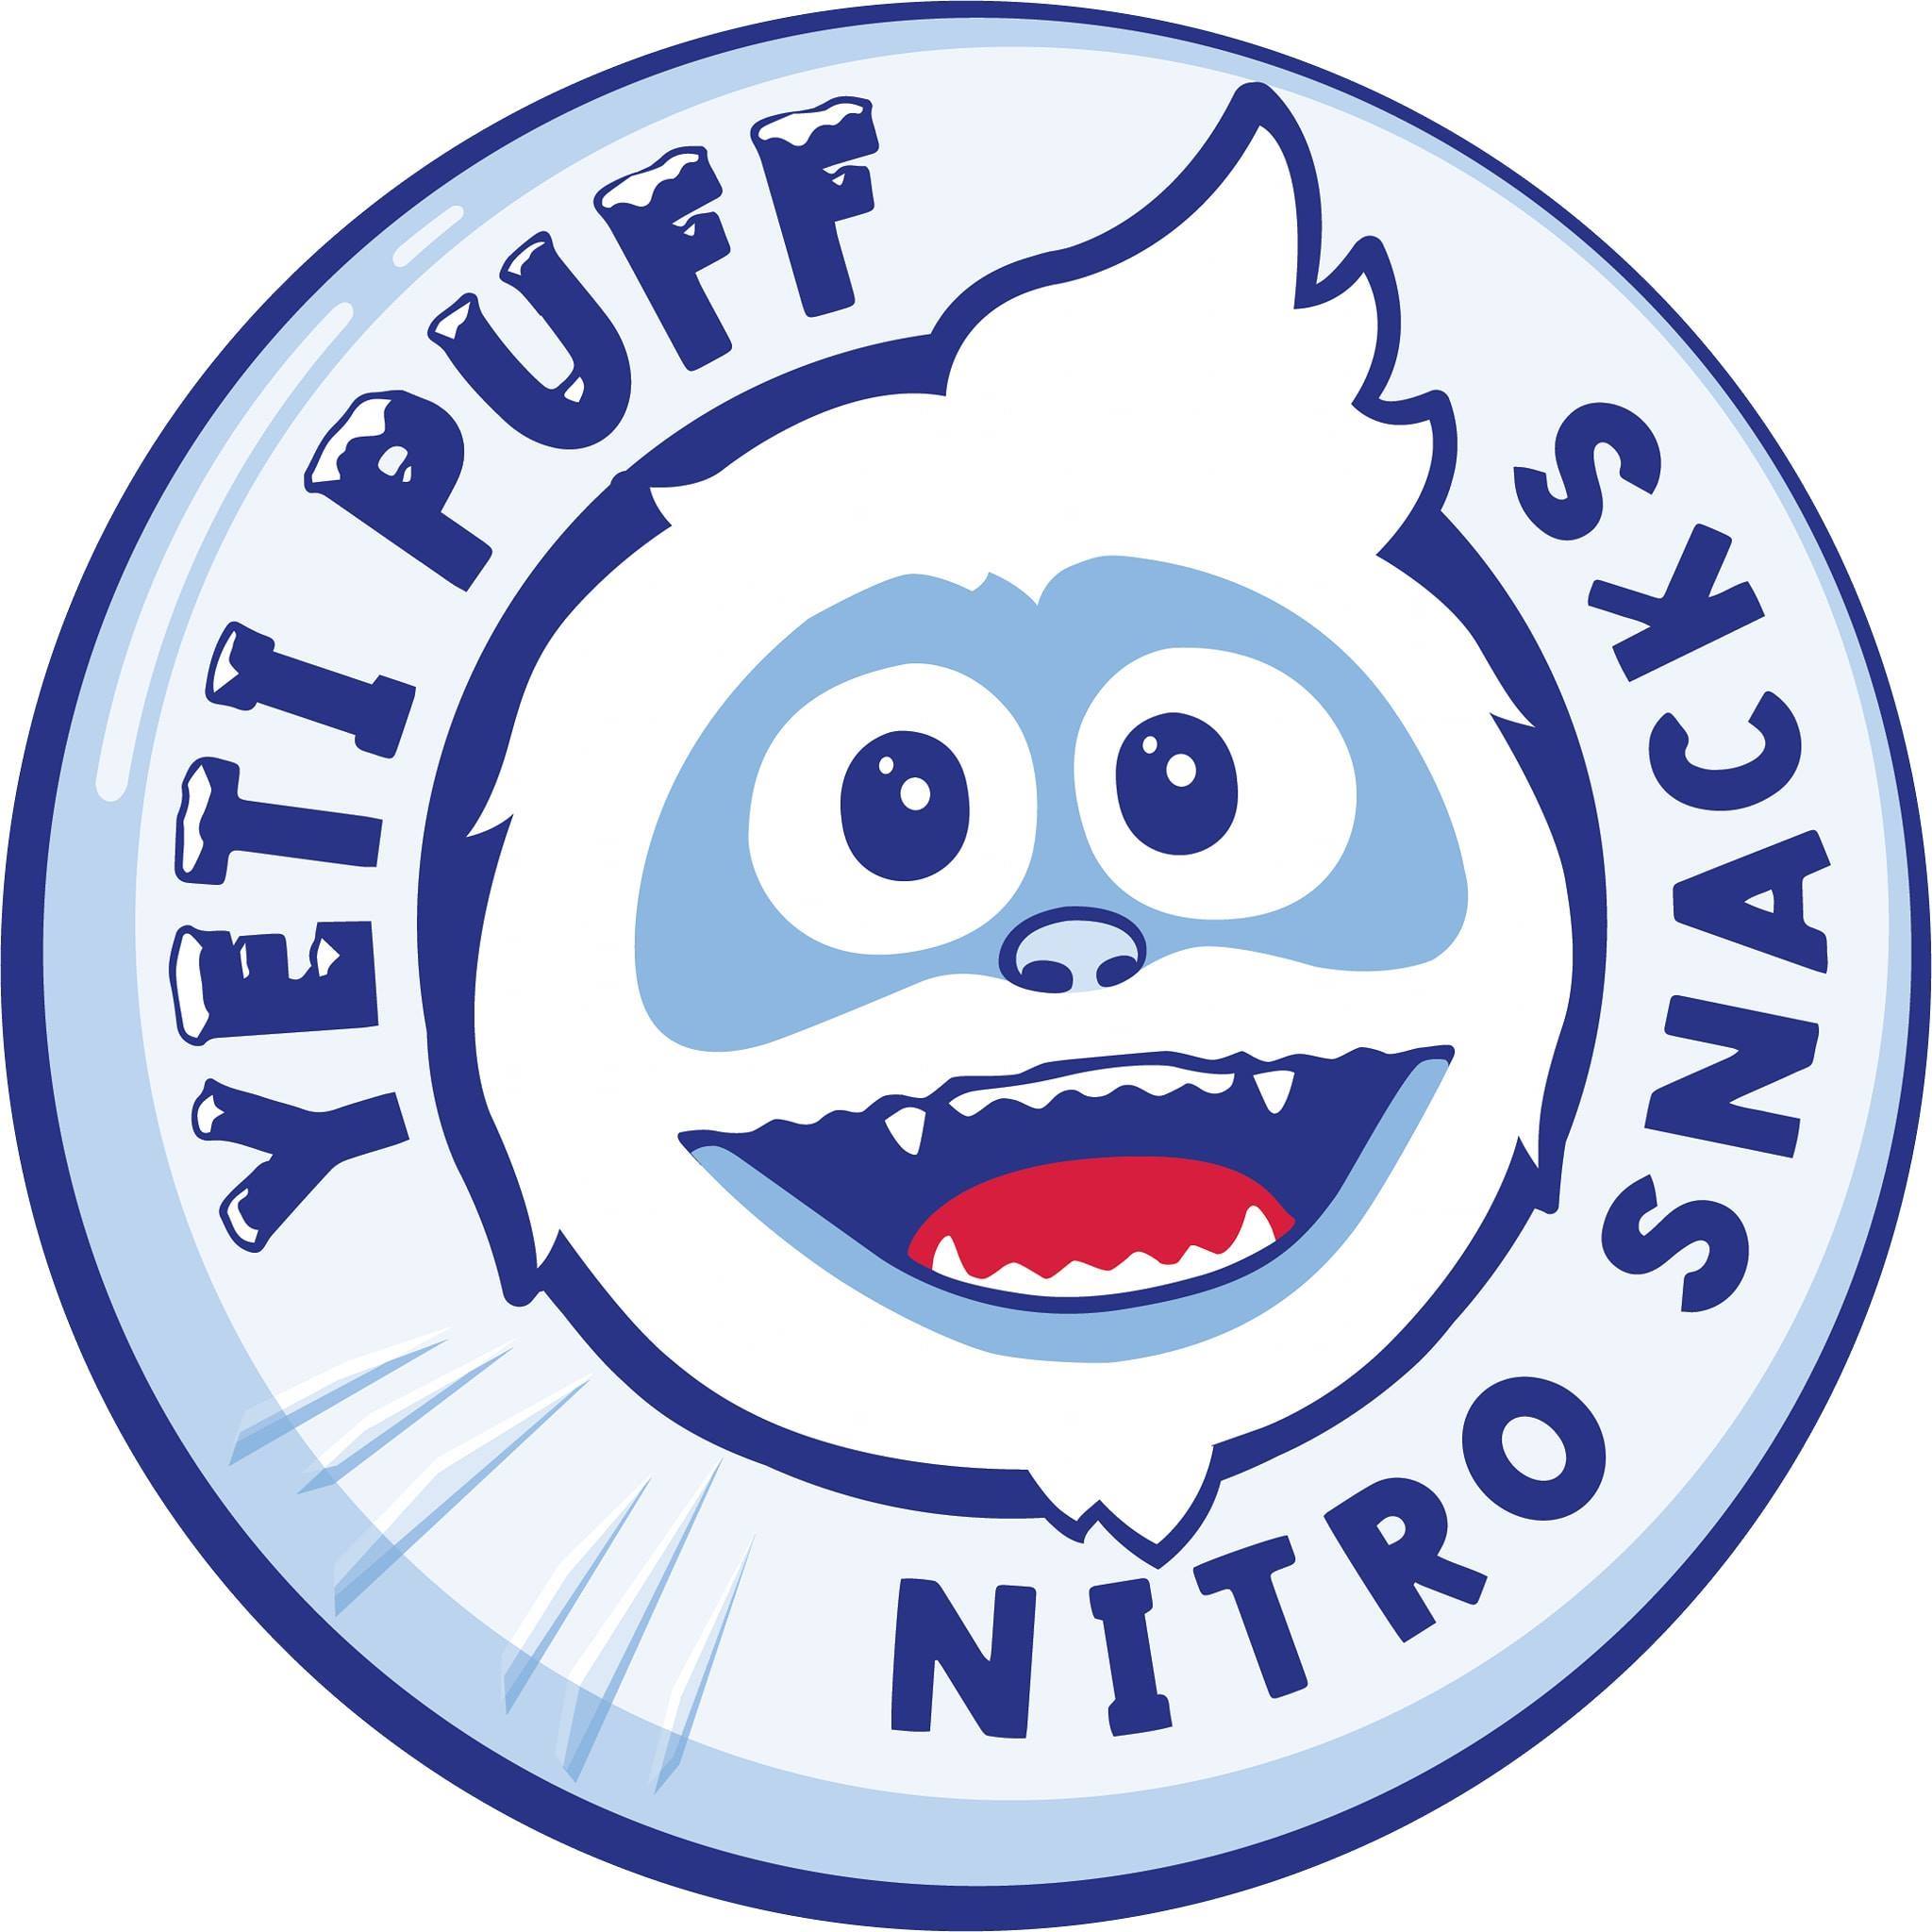 Yeti Puff logo